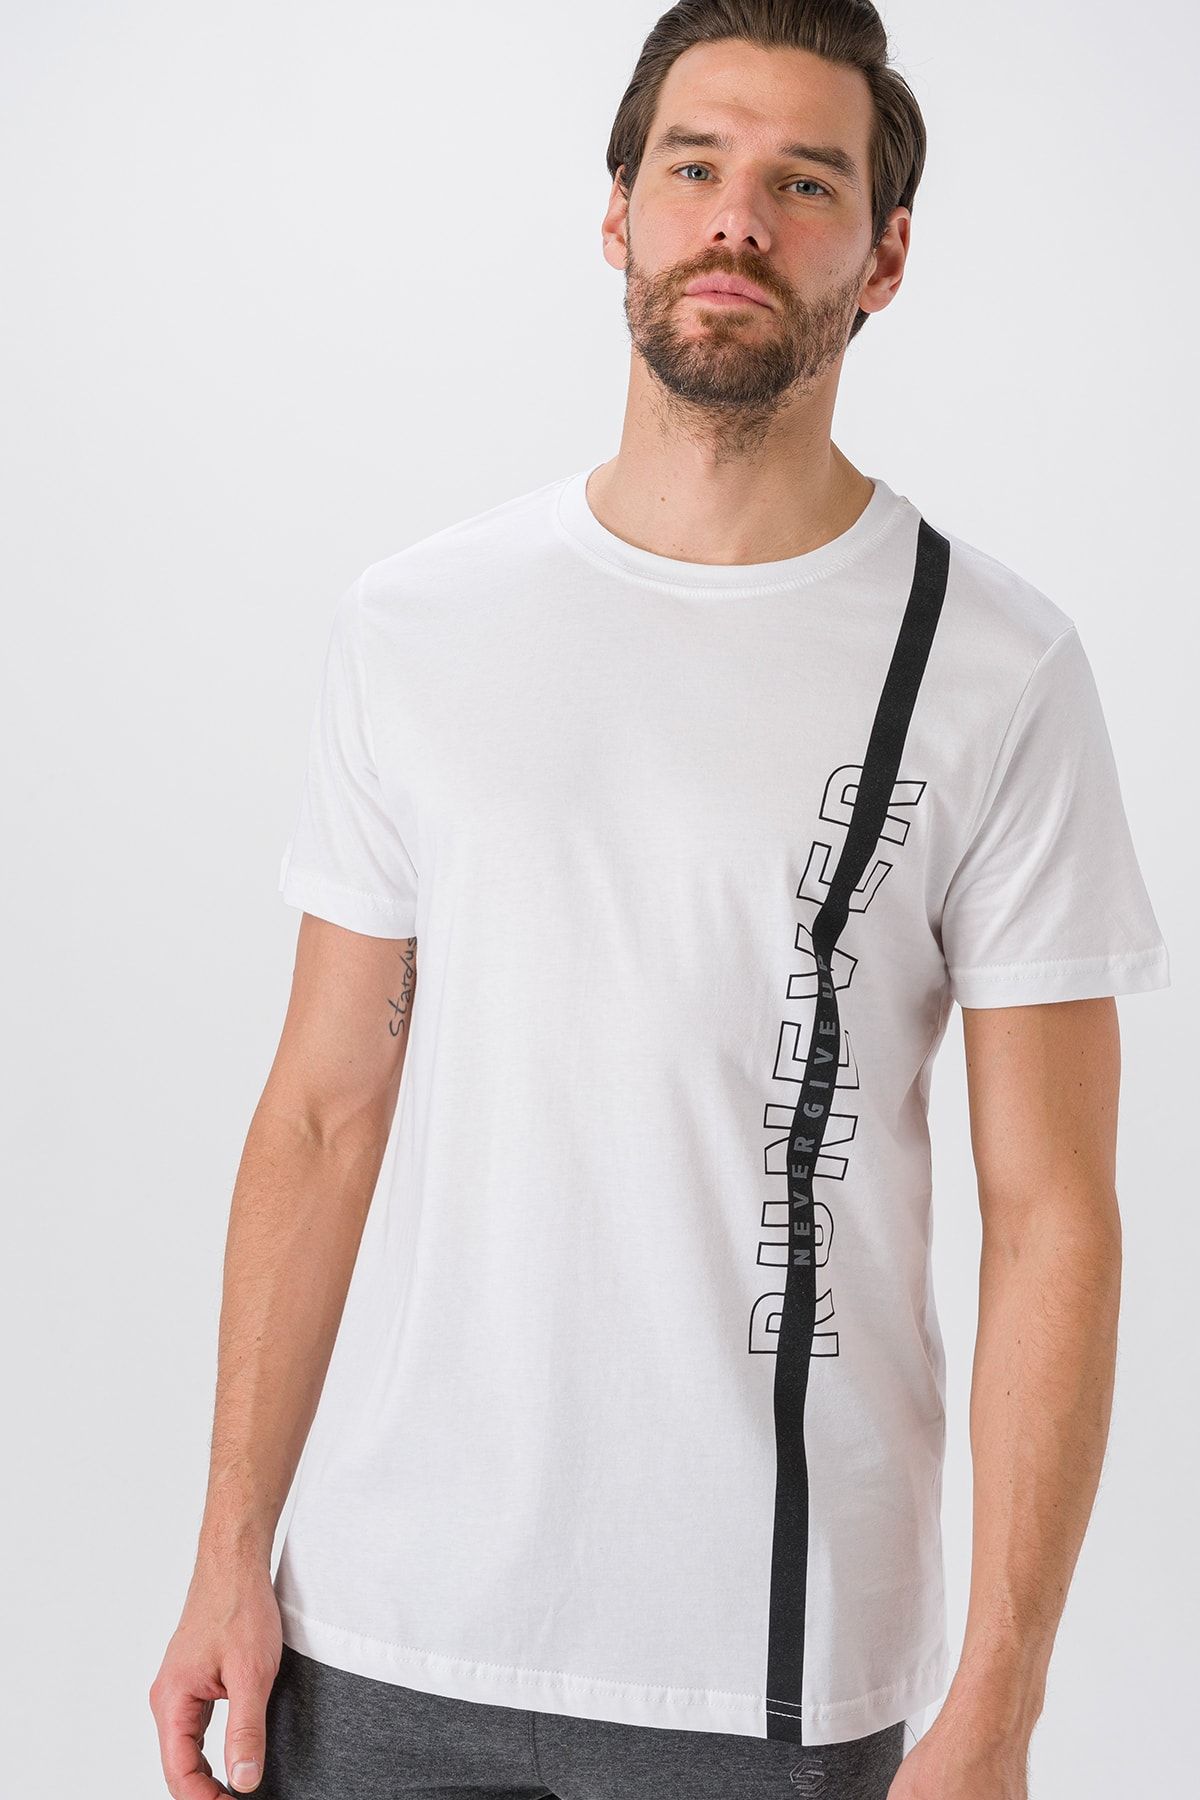 Runever Beyaz Baskılı Basic Erkek T-shirt 25779